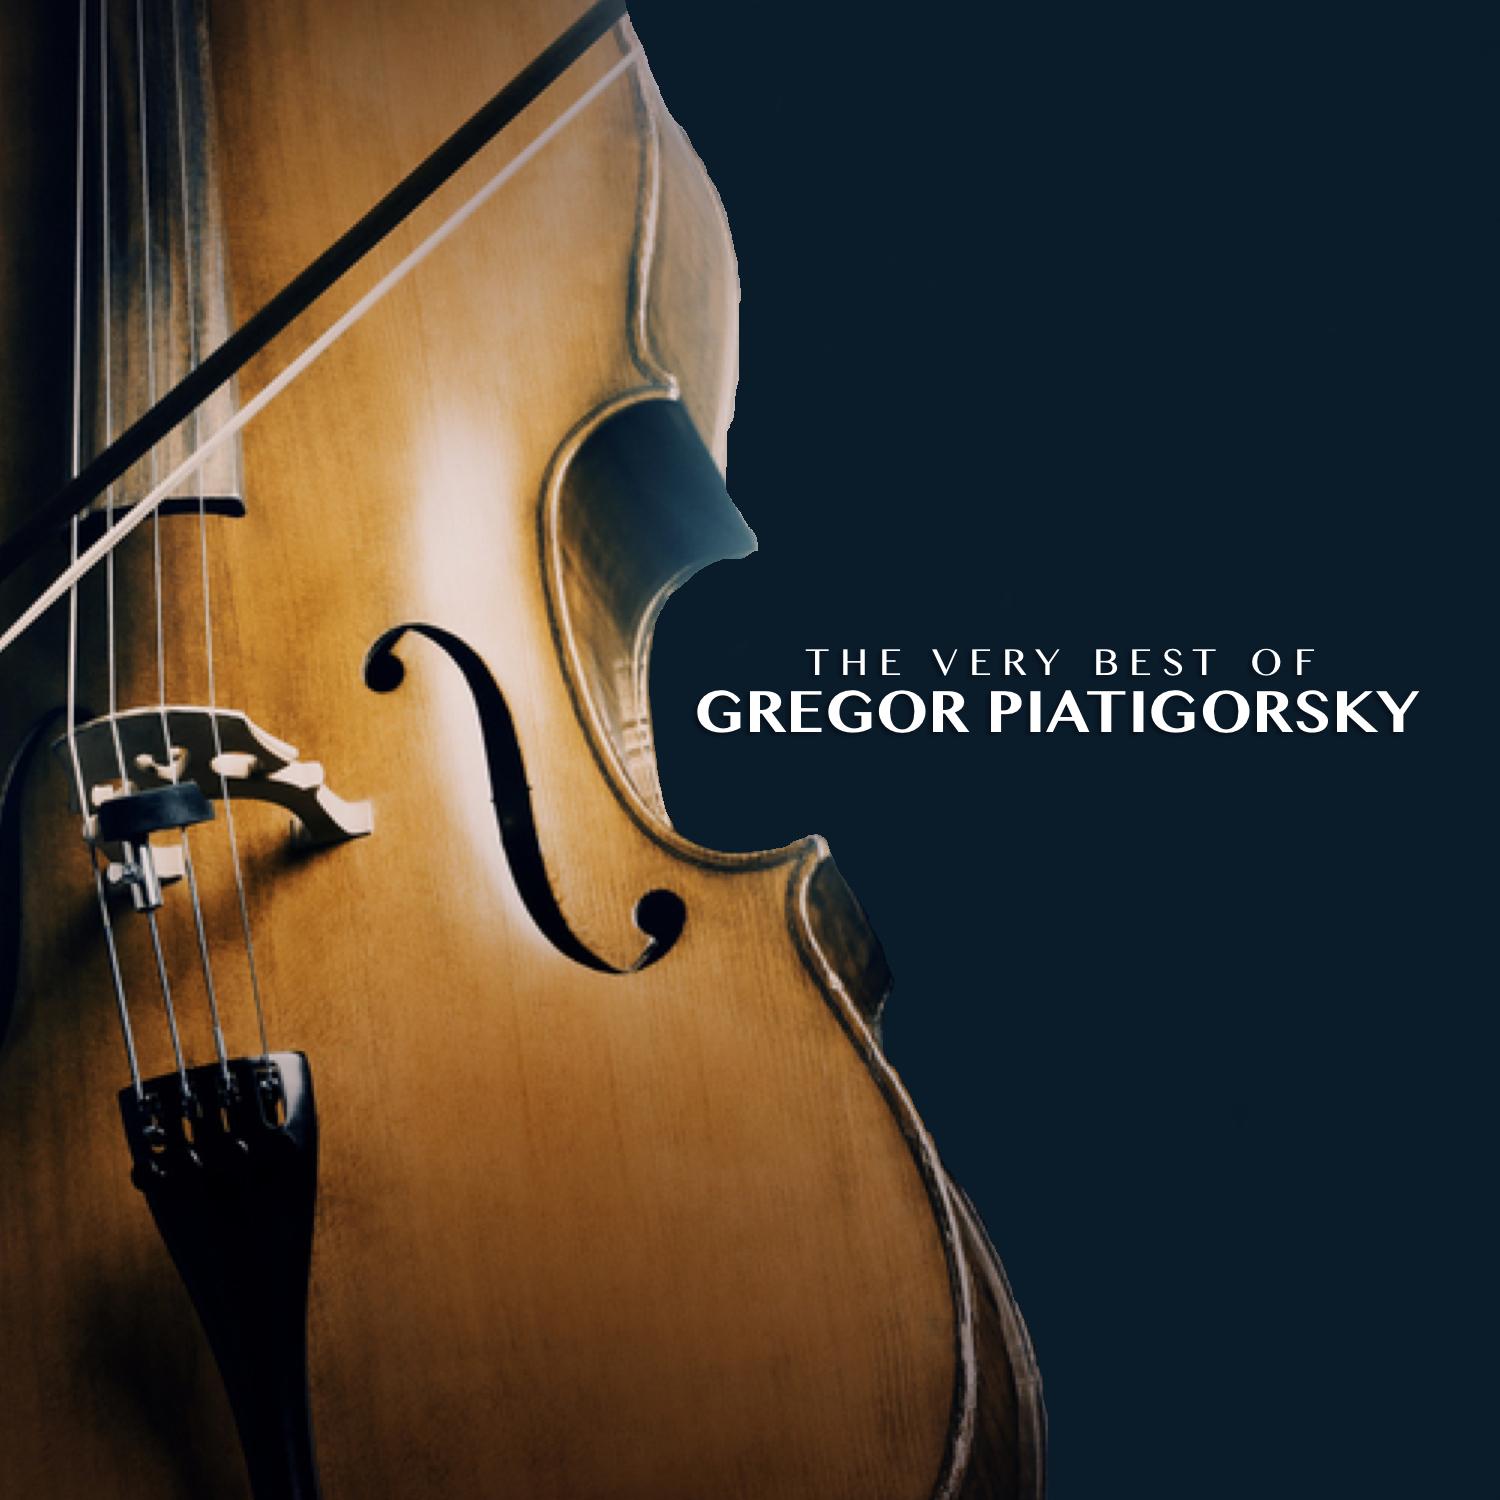 The Very Best of Gregor Piatigorsky